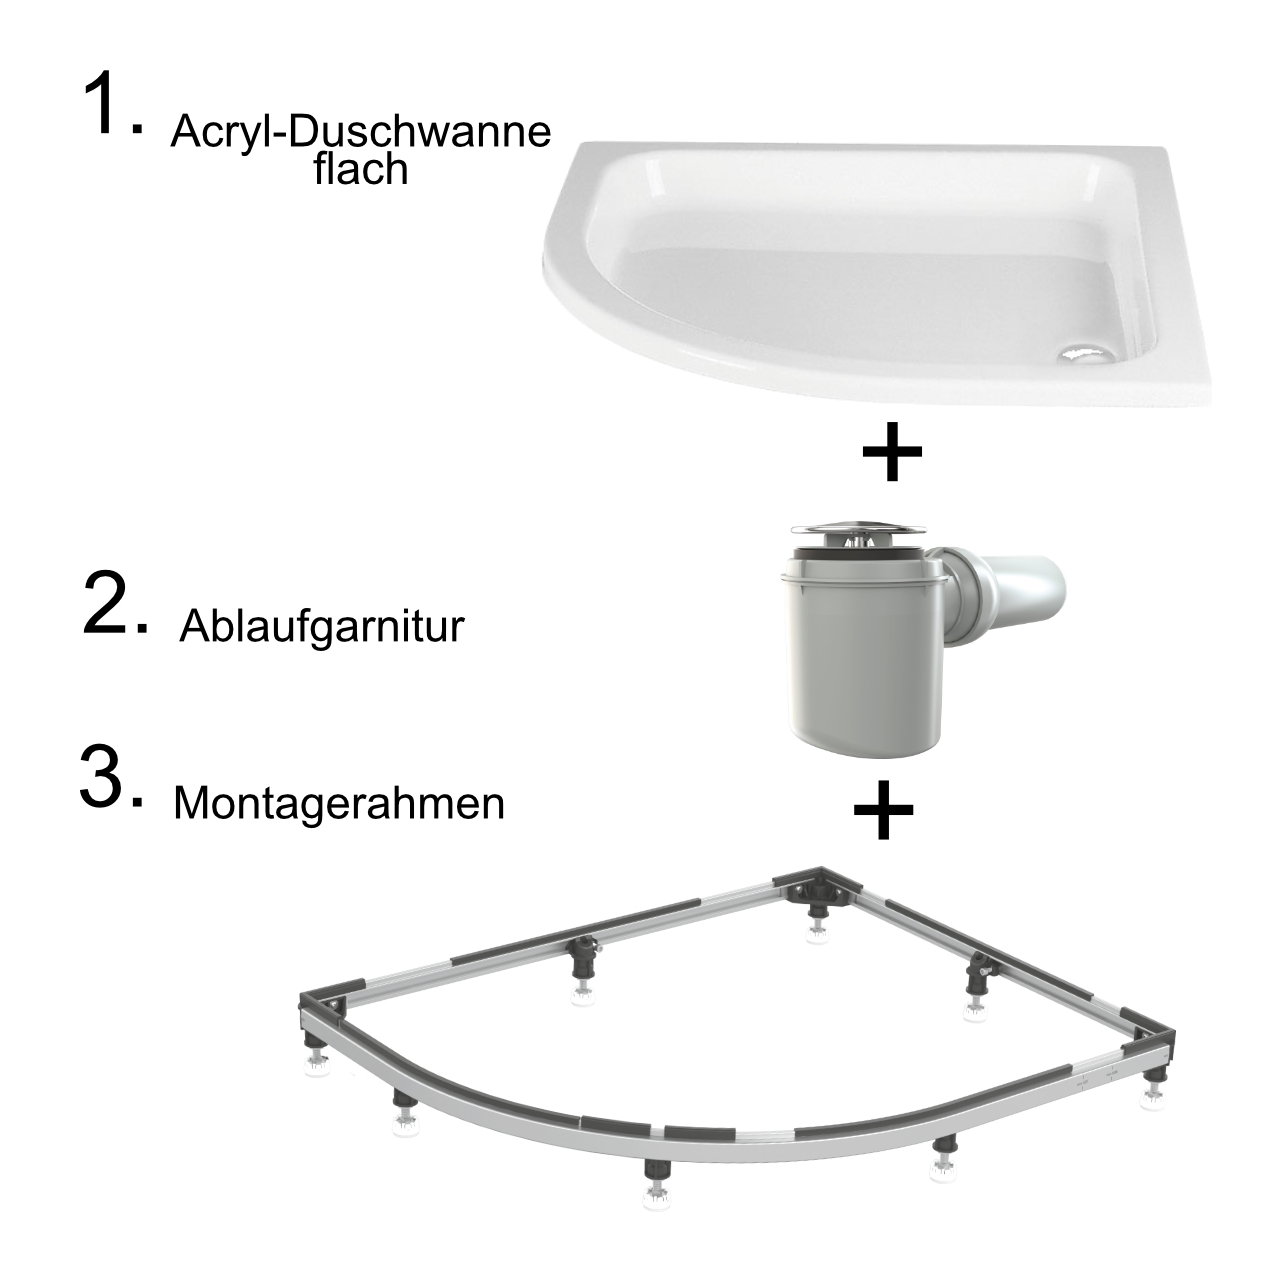 HSK viertelkreis Acryl-Duschwanne „flach“ 80 × 80 cm in Weiß